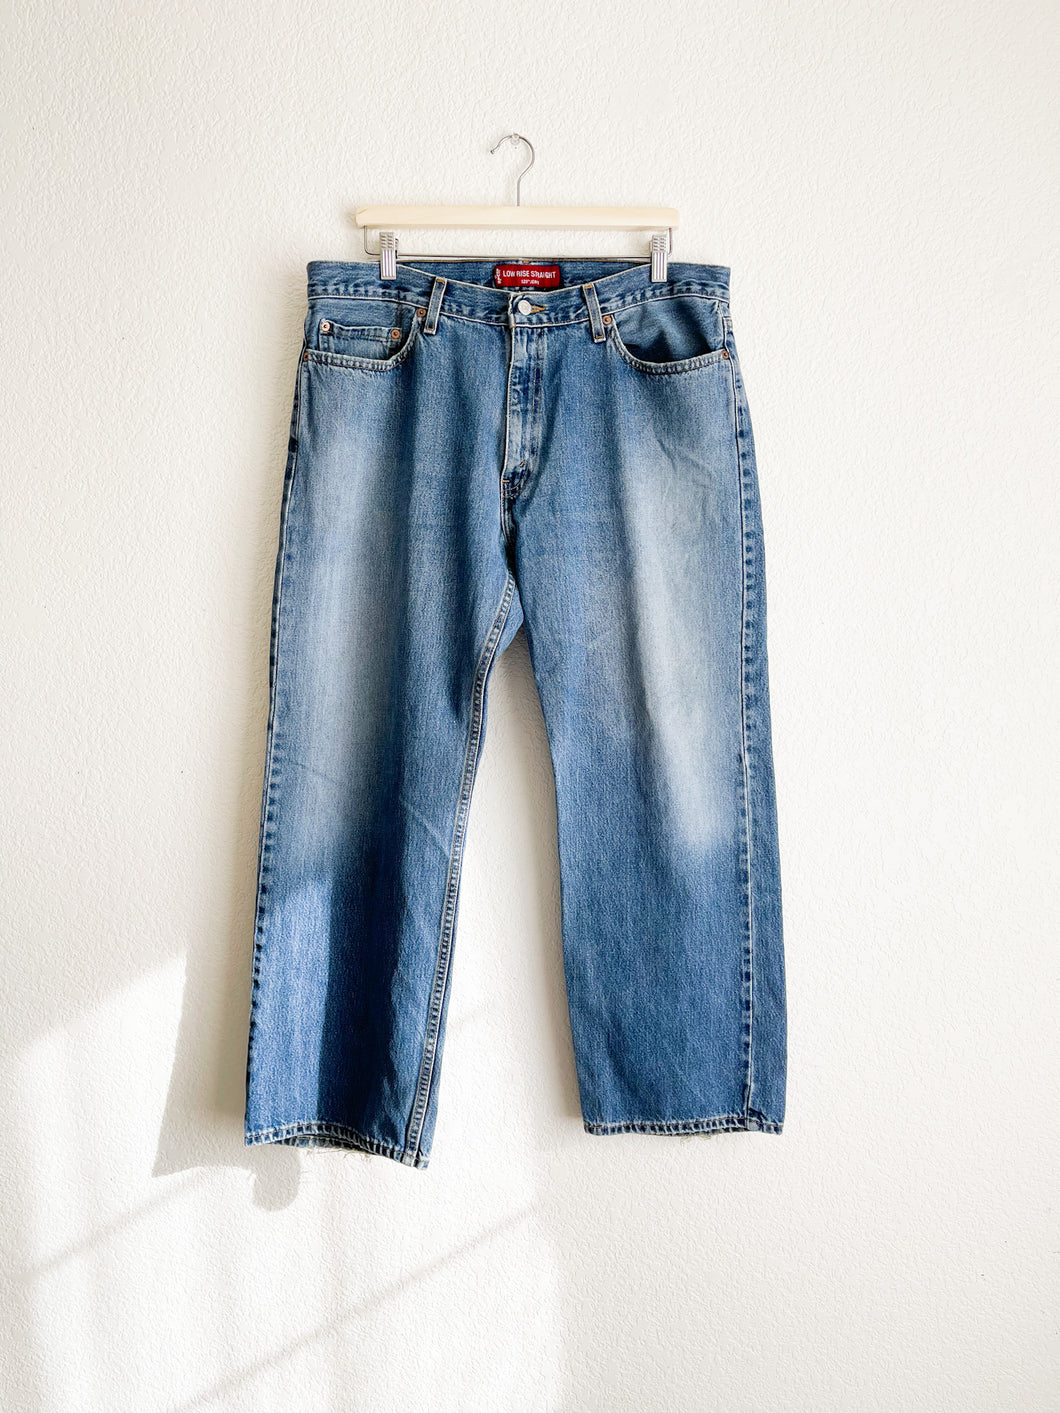 Vintage Levi's 529 Jeans - 38